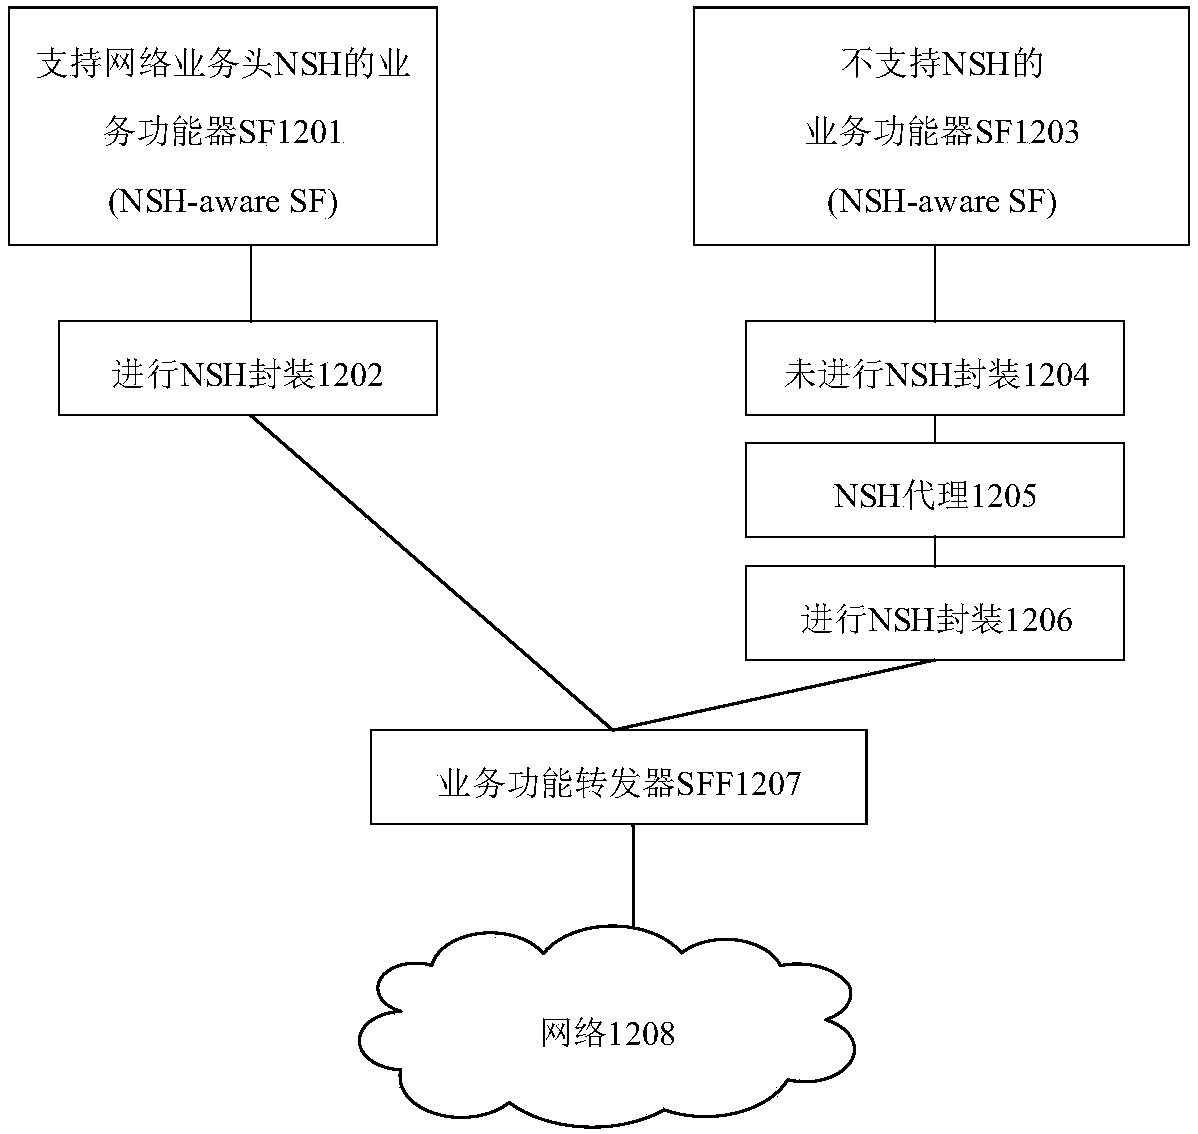 Method and device for forwarding datagram